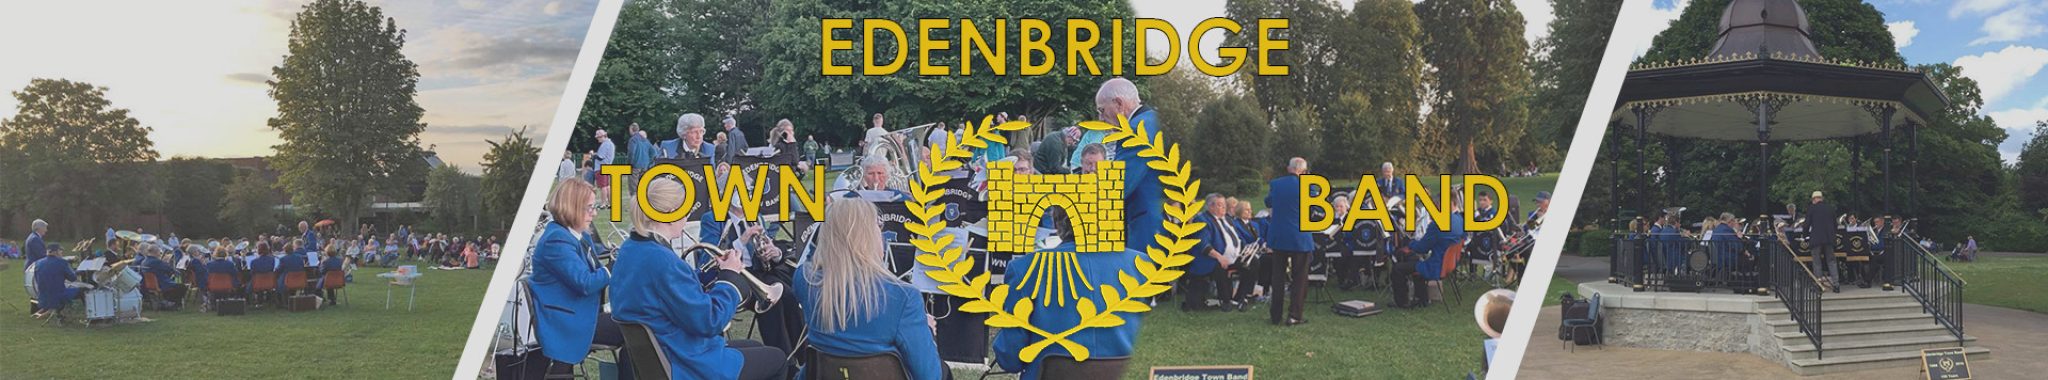 Edenbridge-Town-Band Banner- full